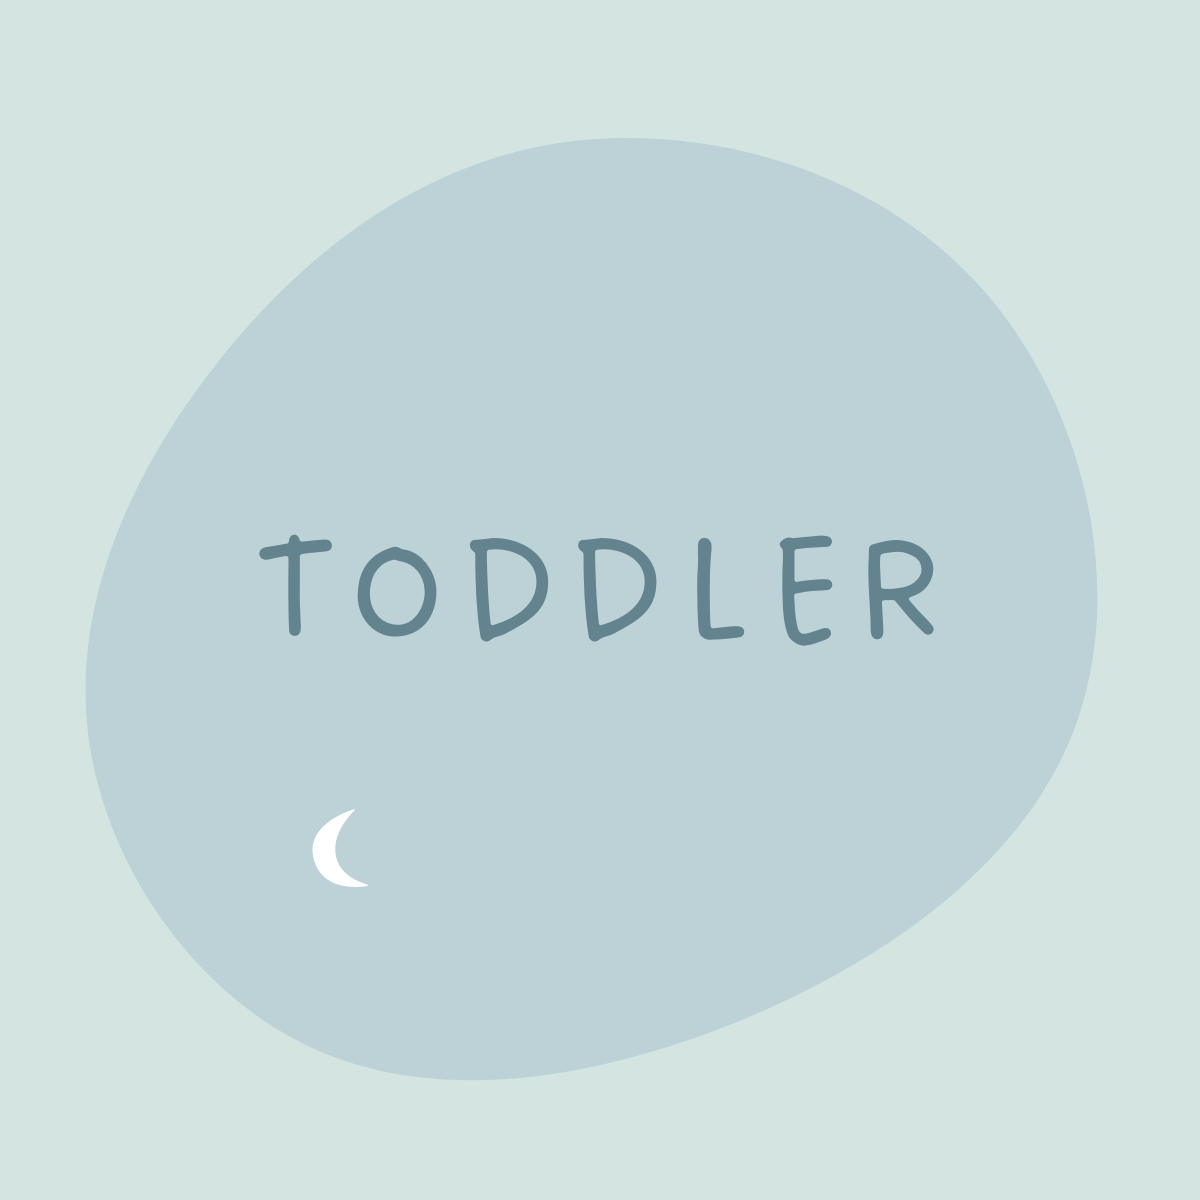 Toddler